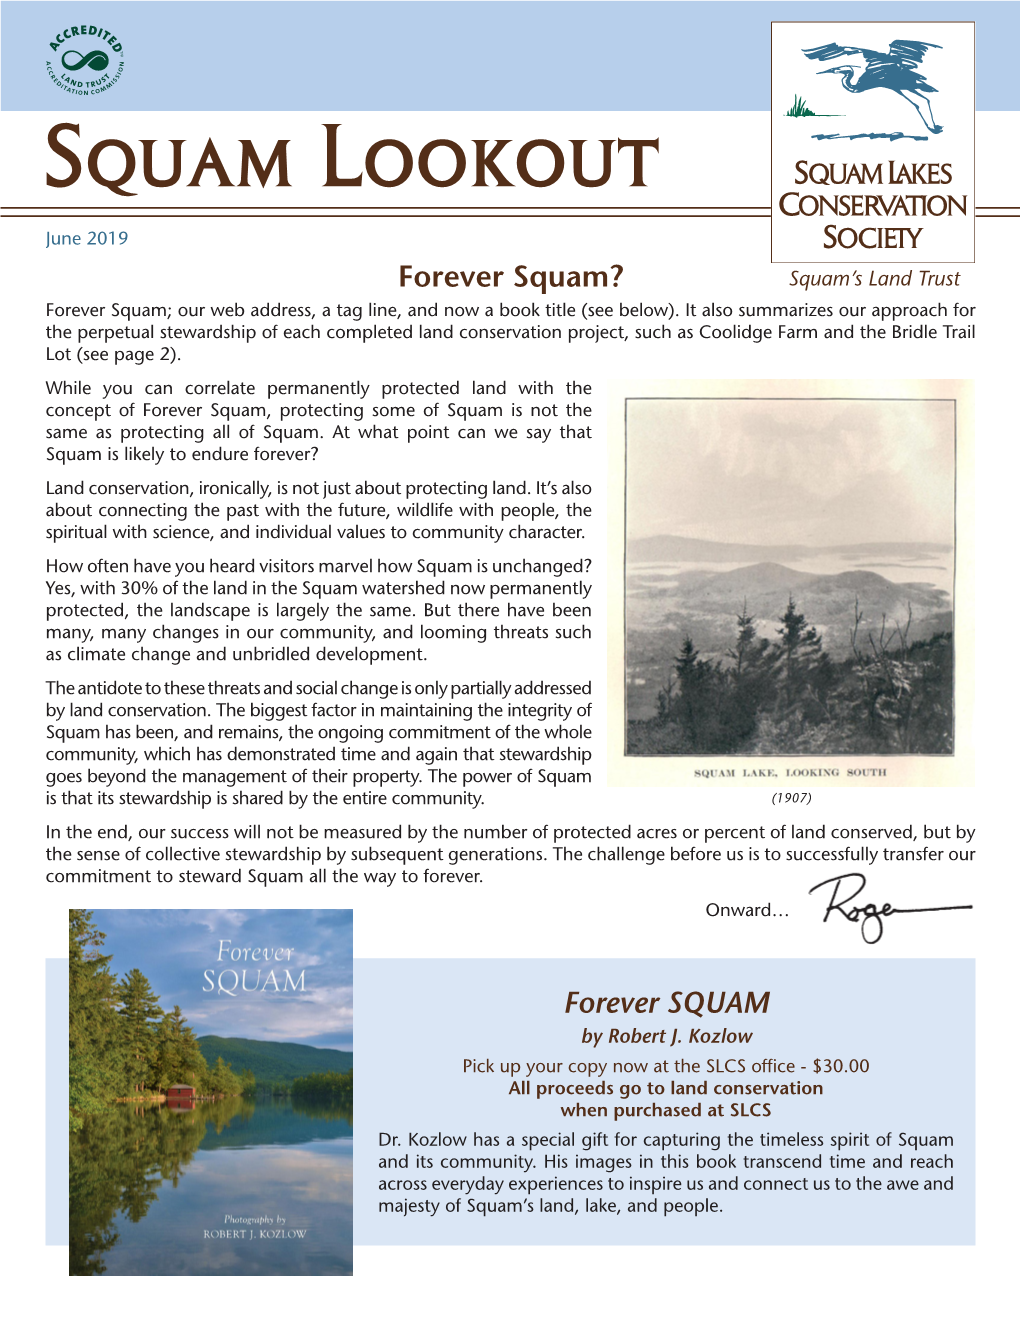 Squam Lookout